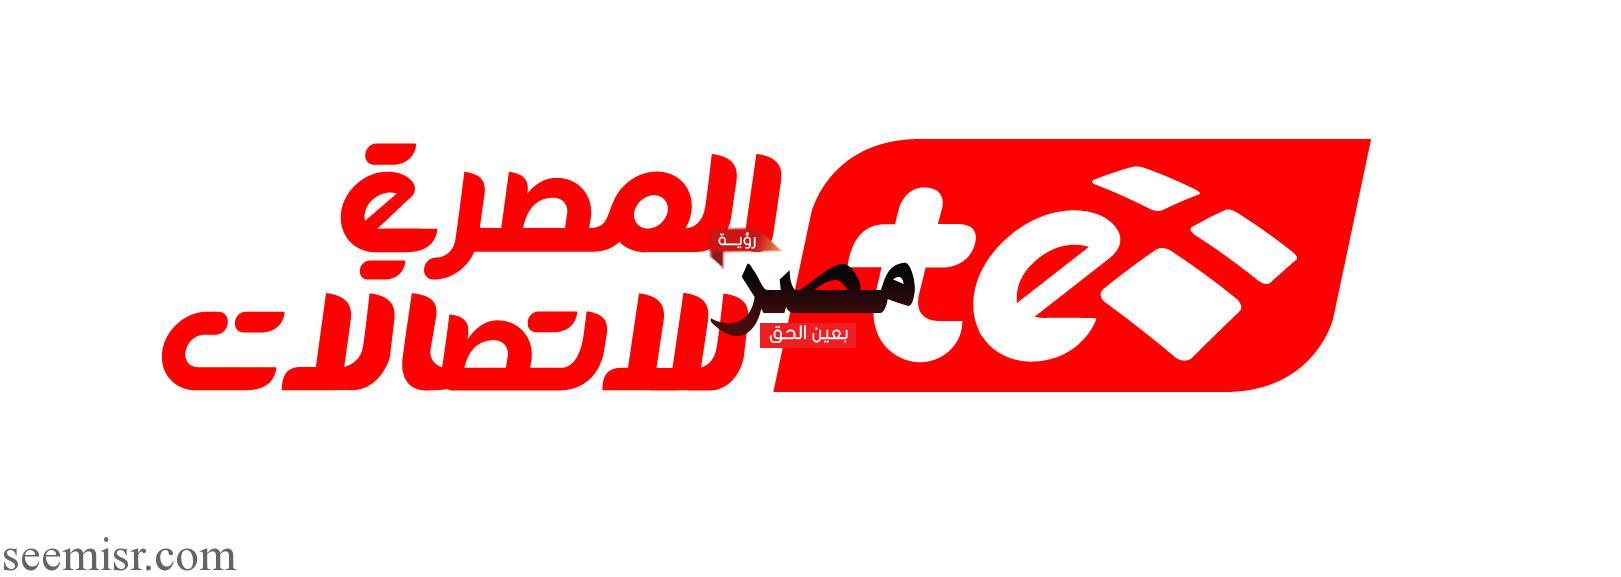 مفاجأة المصرية للاتصالات لعملائها بمناسبة السنة الجديدة